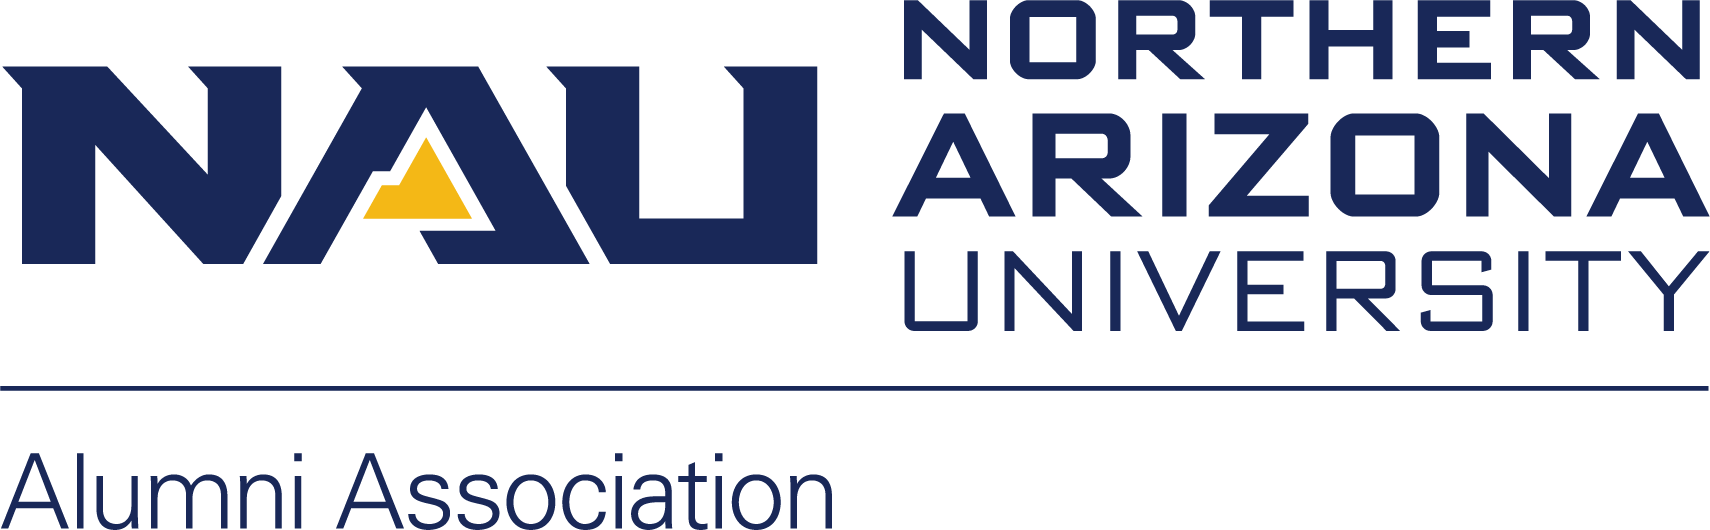 Welcome Northern Arizona University Alumni